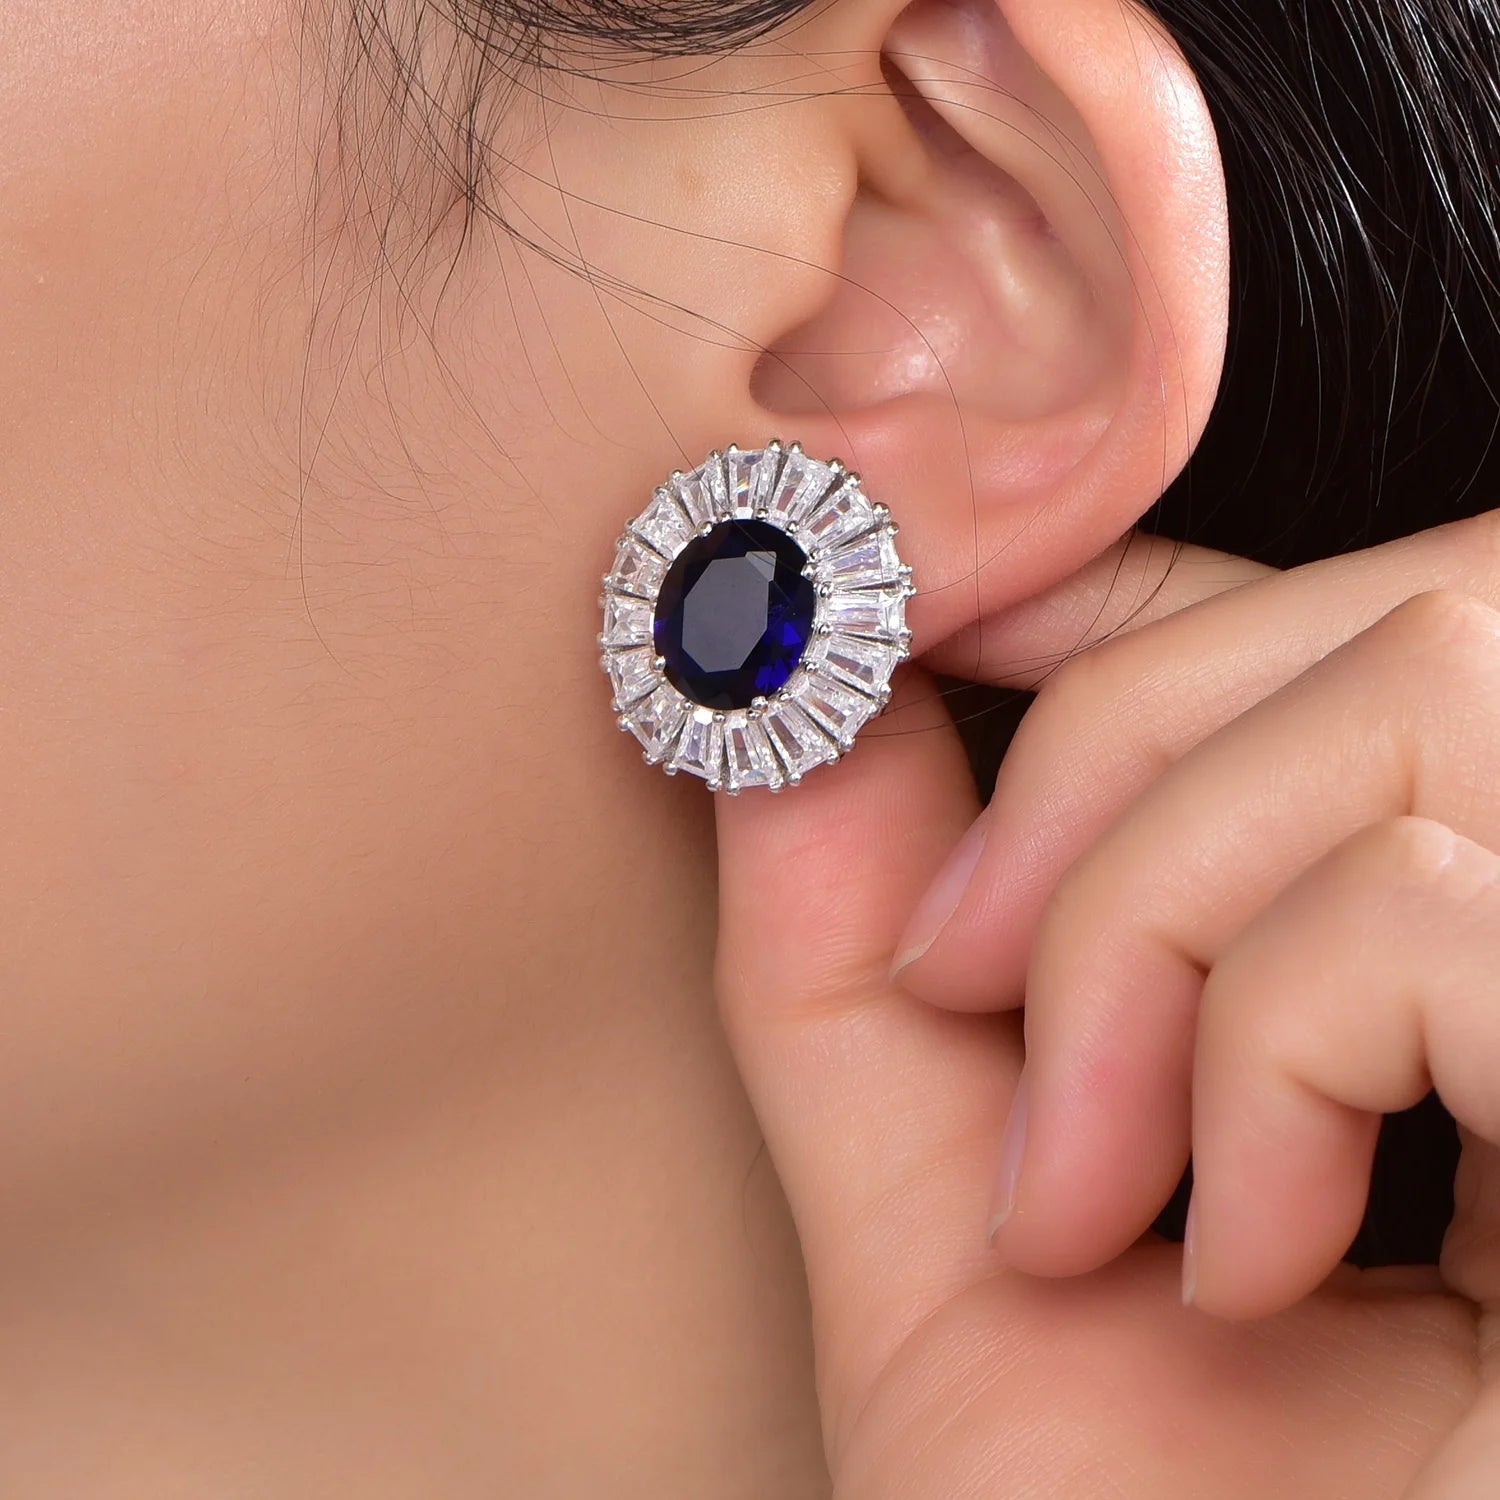 Sterling silver earrings 925 blue stone earrings s925 micro zirconia stud earrings Kirin Jewelry